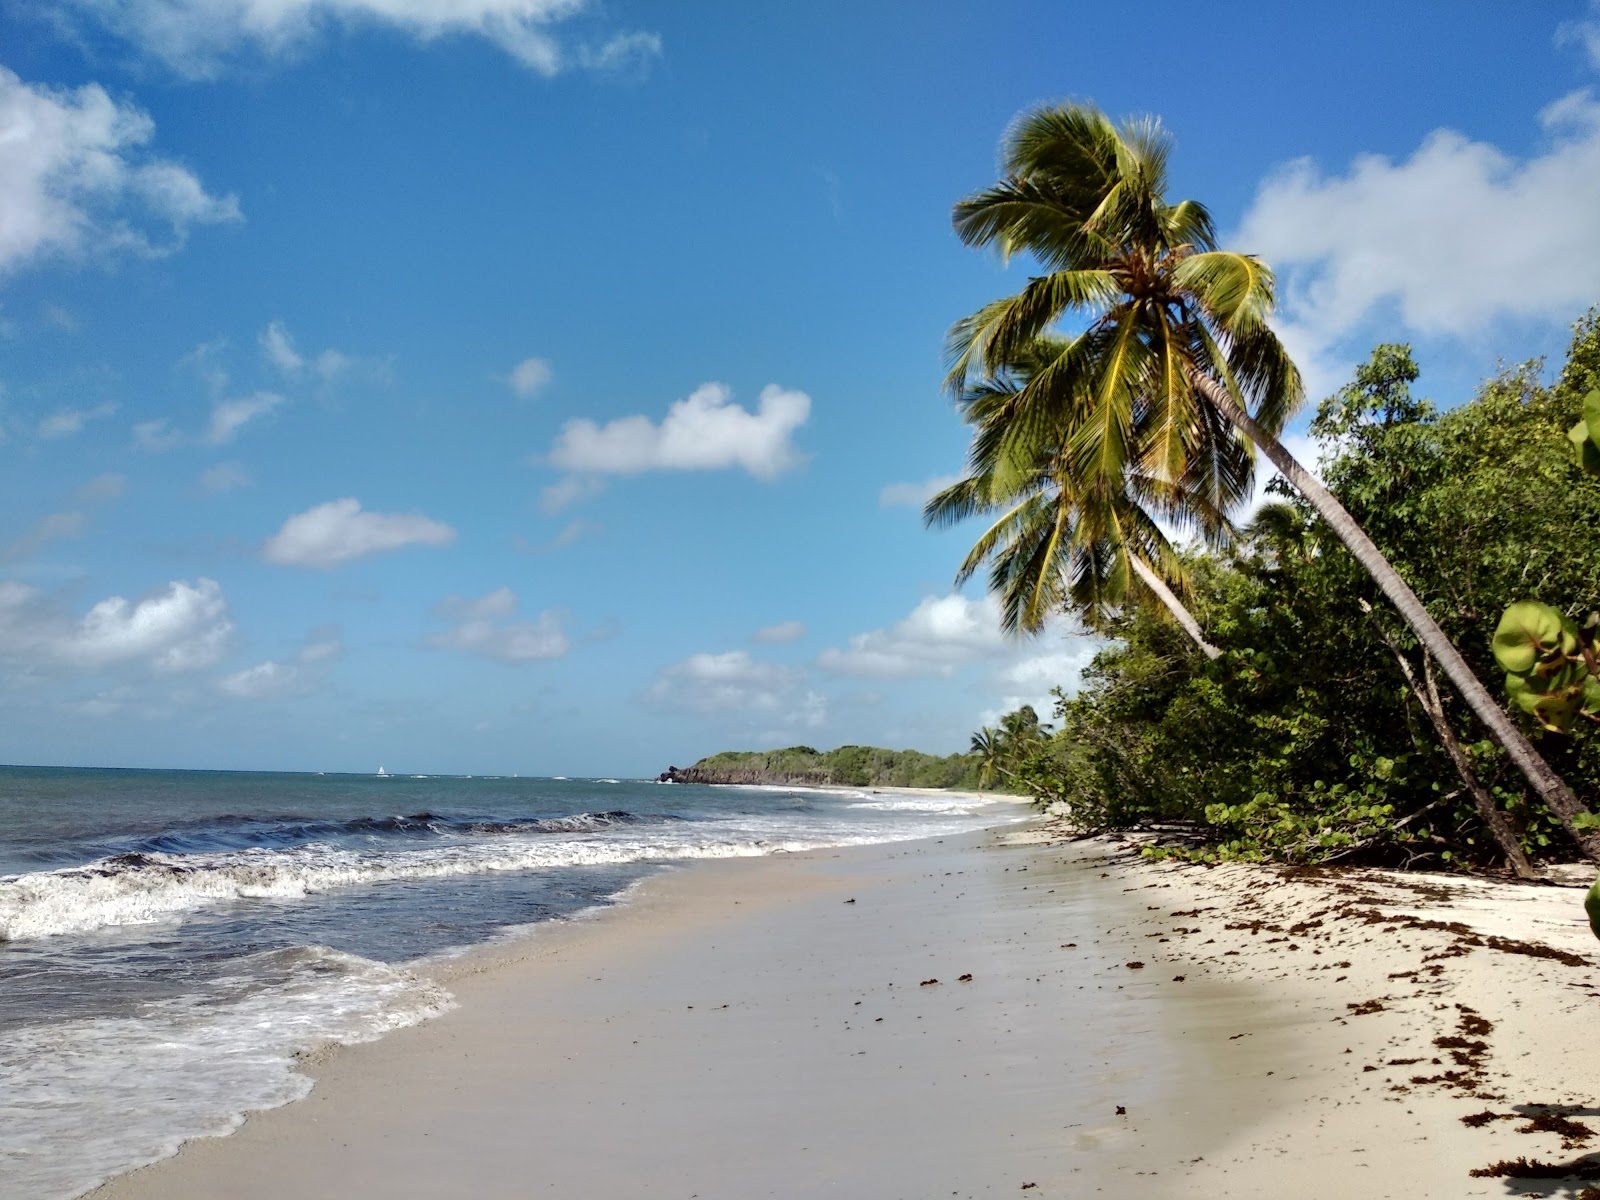 Foto de Grande terre beach ubicado en área natural